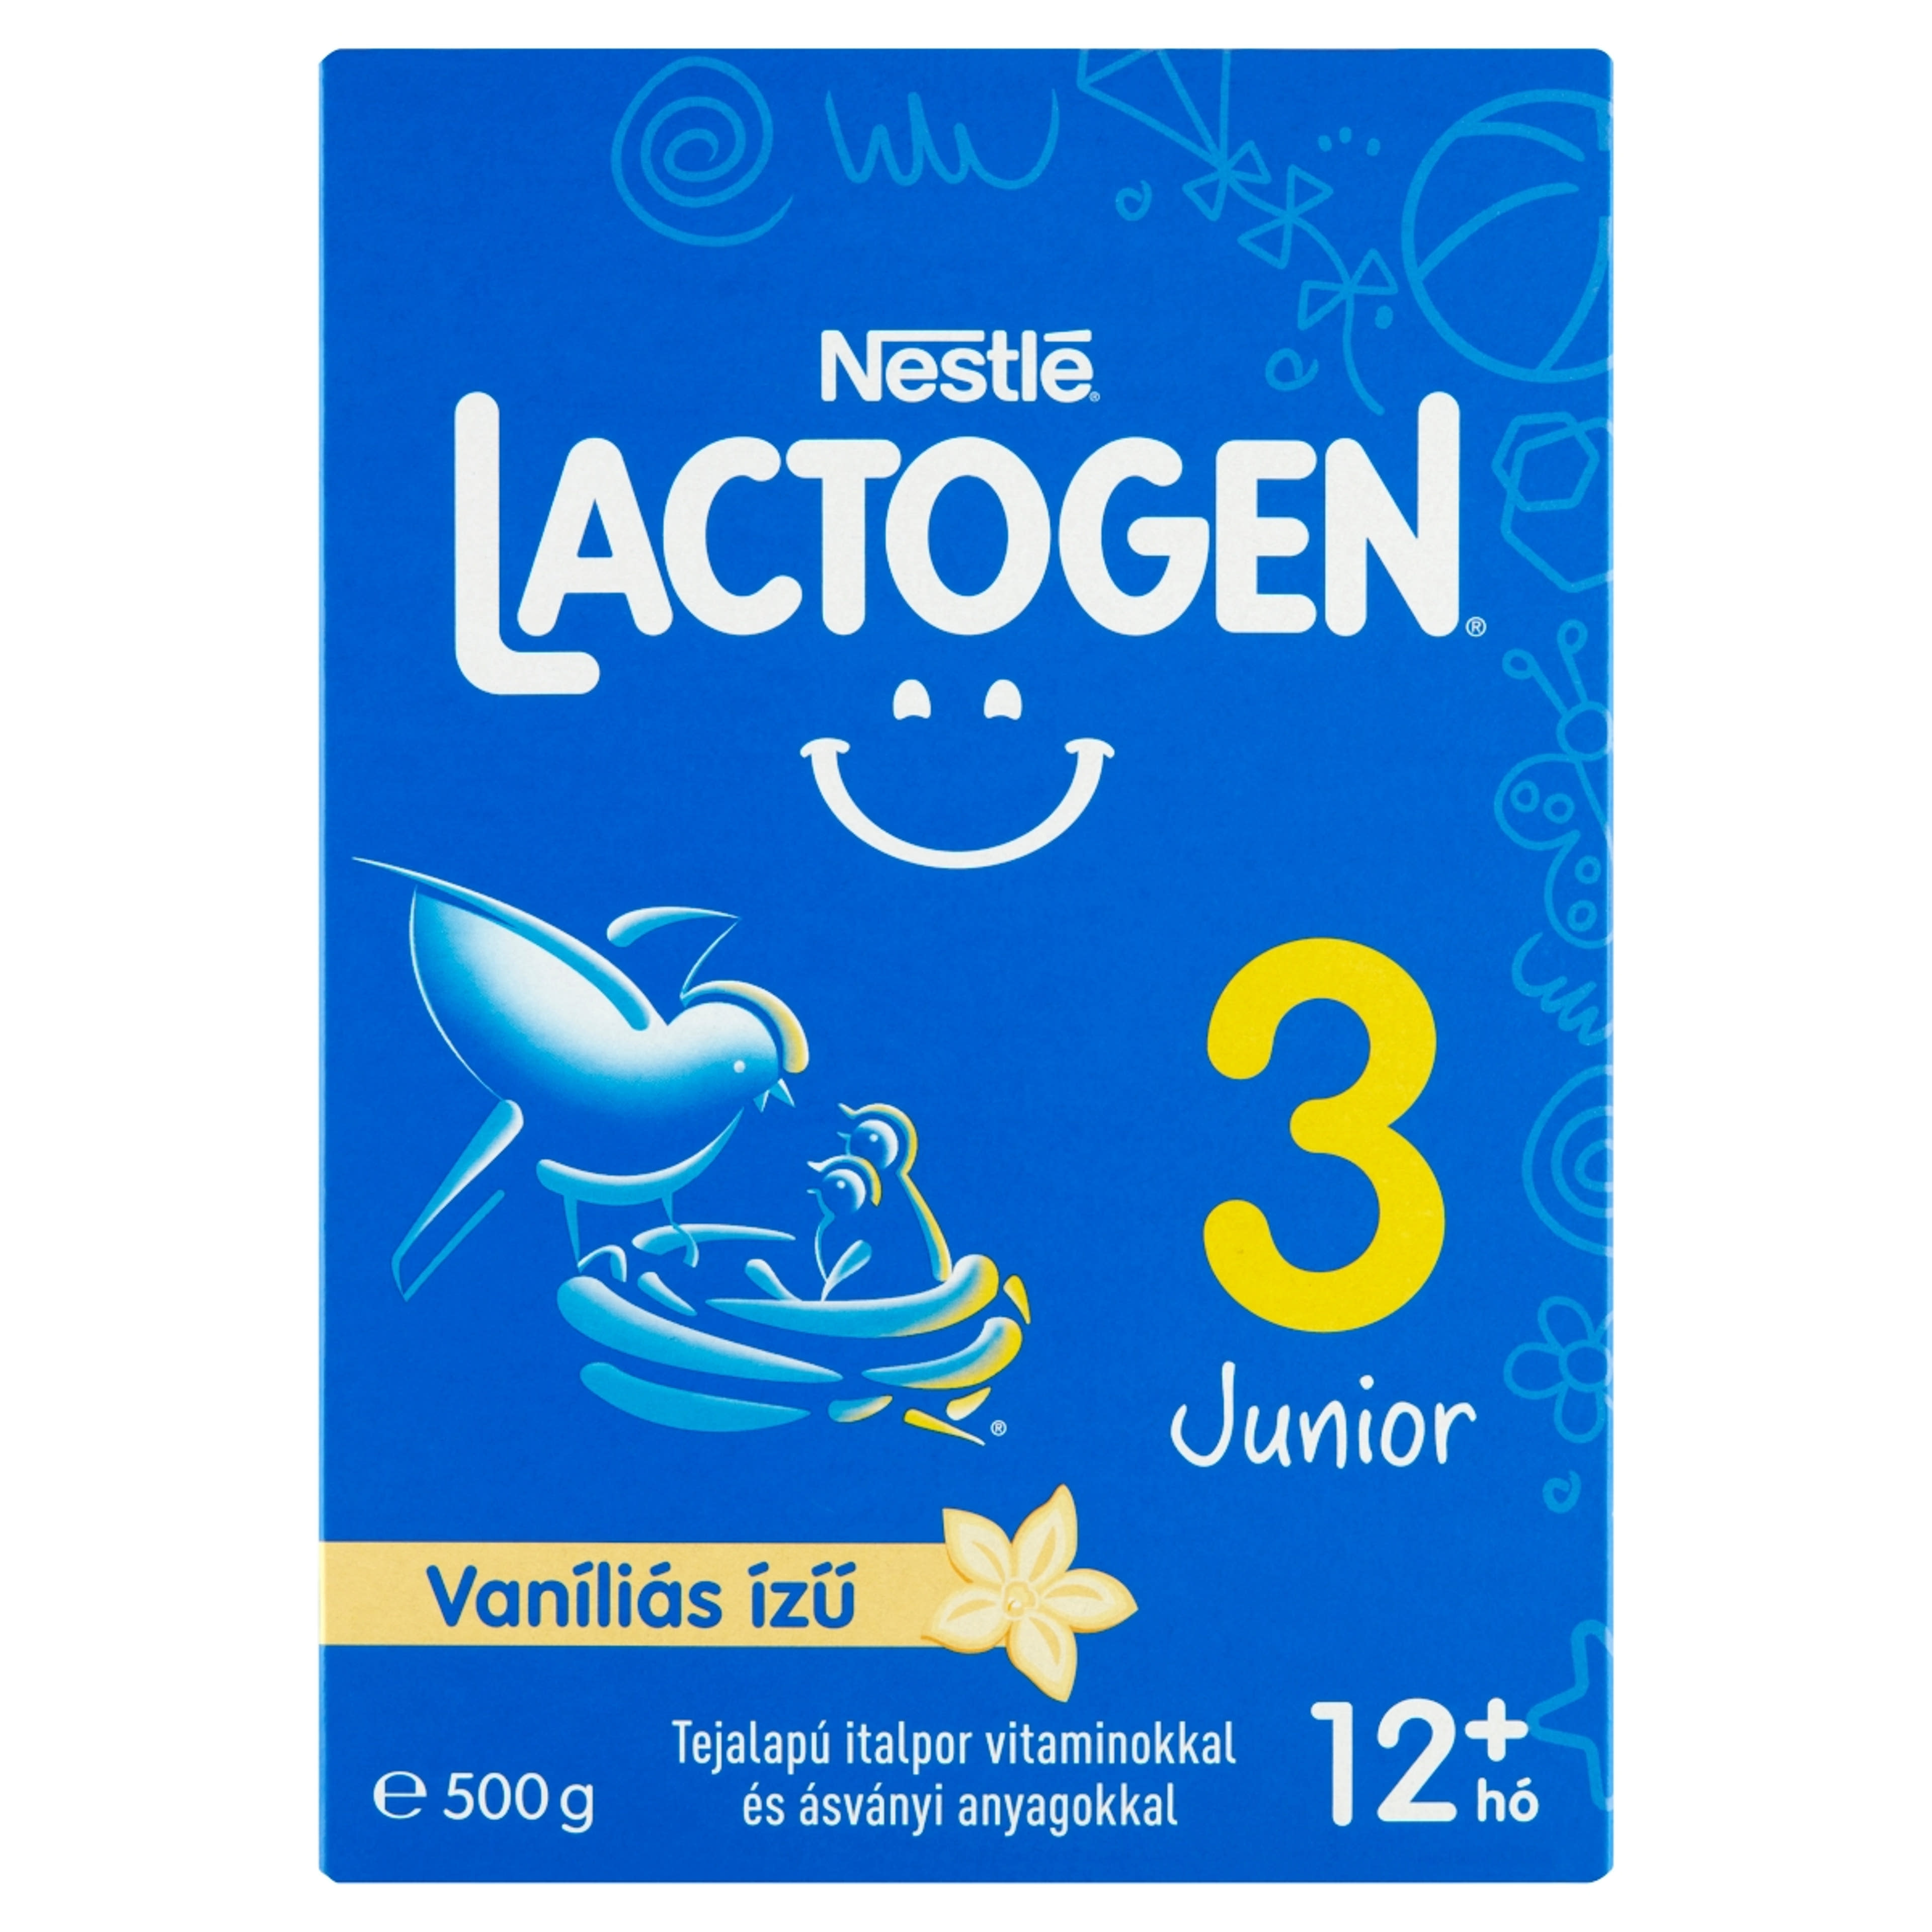 Nestlé Lactogen 3 Junior vaníliás ízű tejalapú italpor, 12 hónapos kortól - 500 g